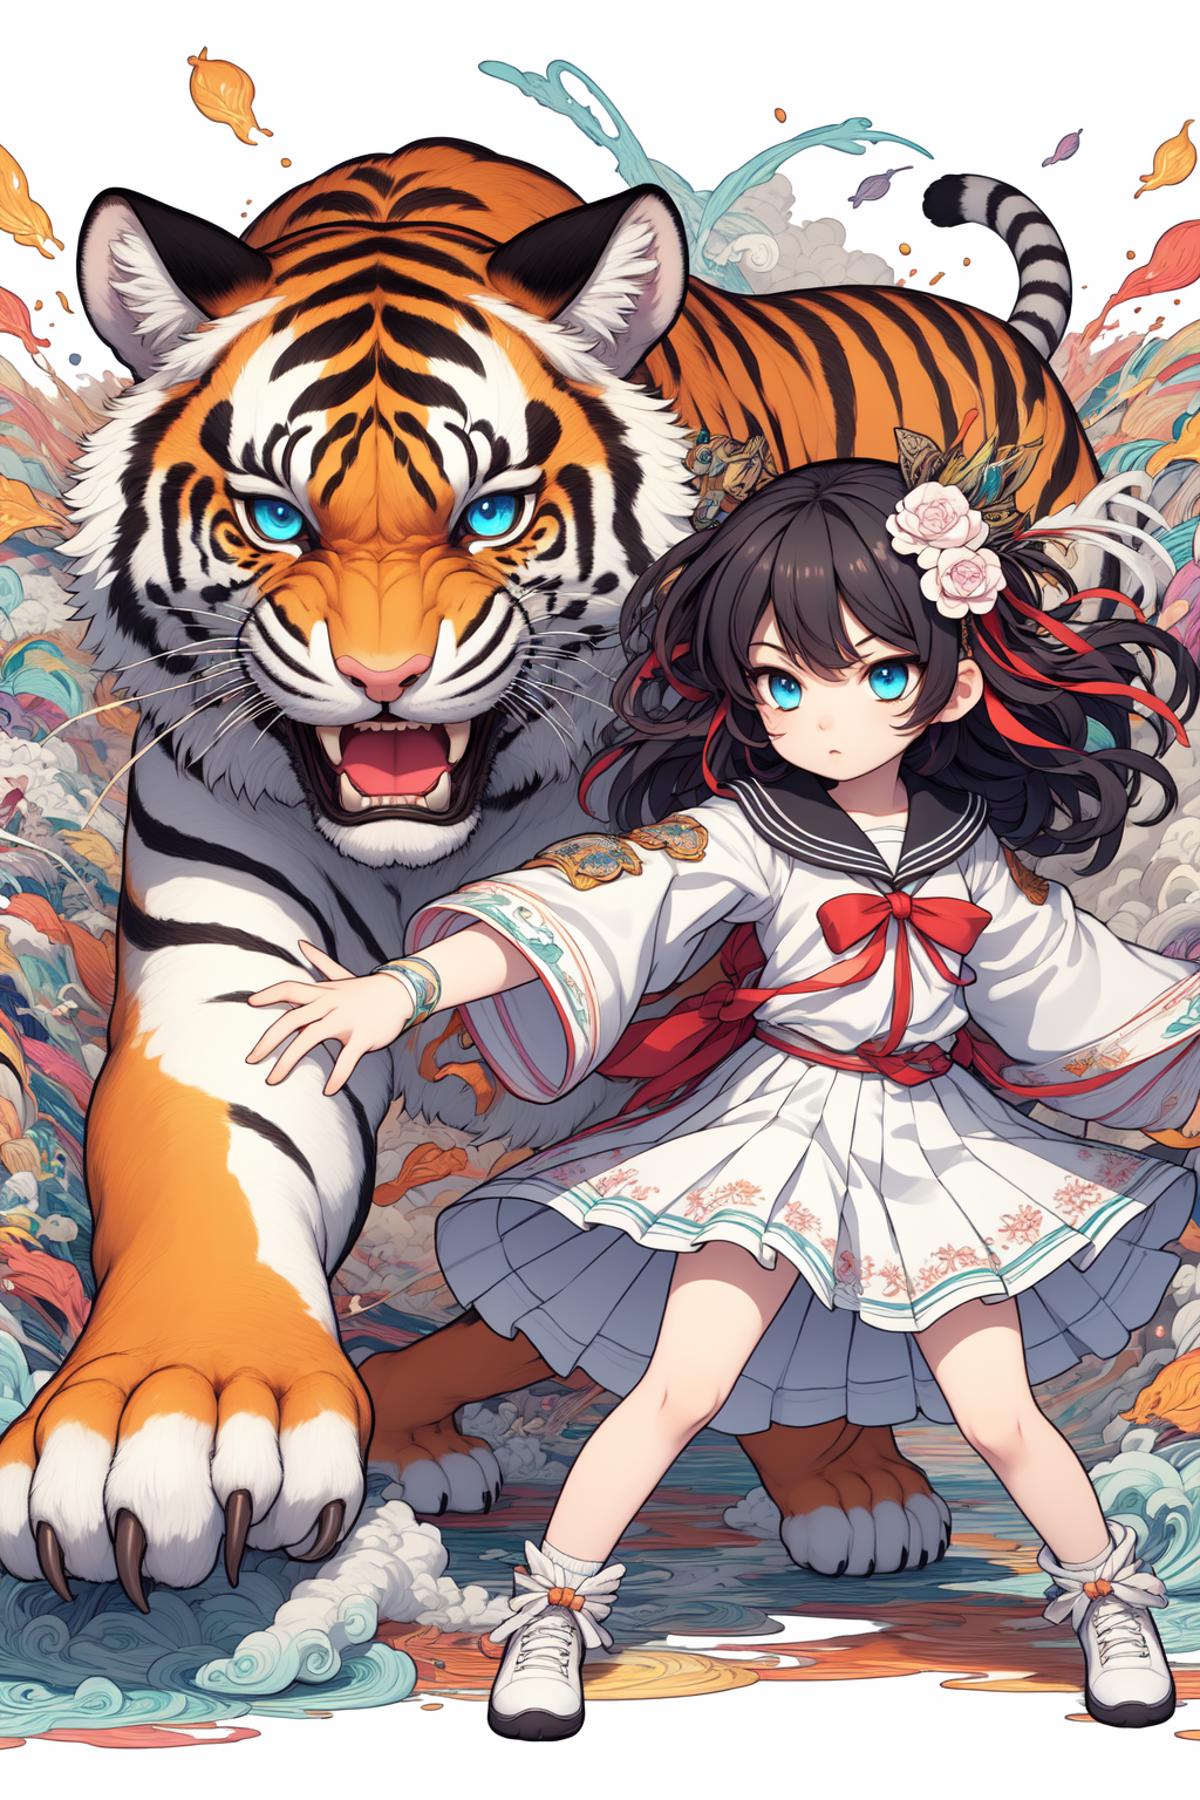 画虎姬--Painted tiger image by kimchi88